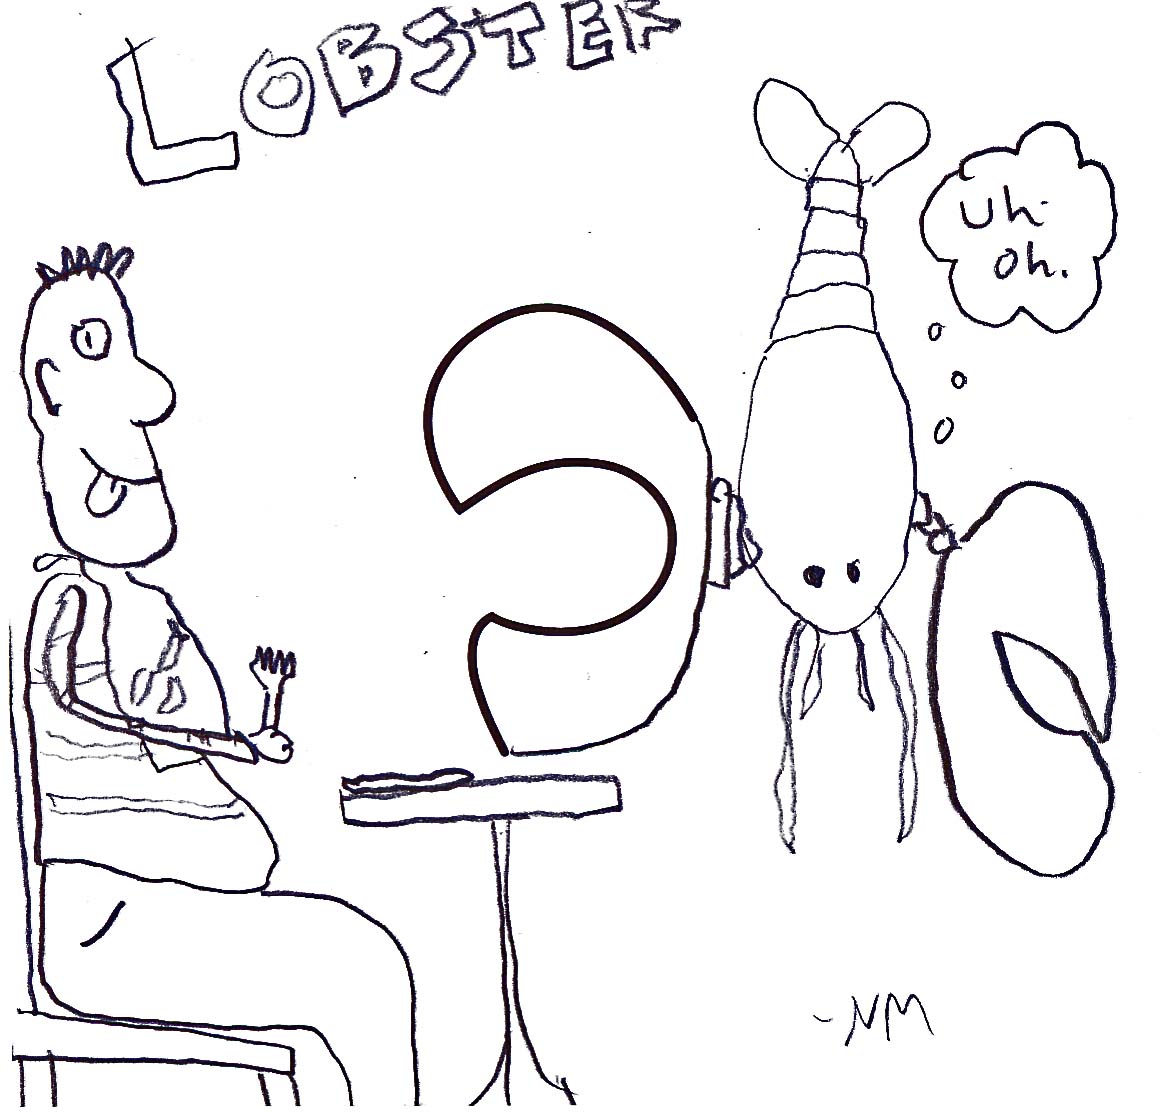 lobsterodile